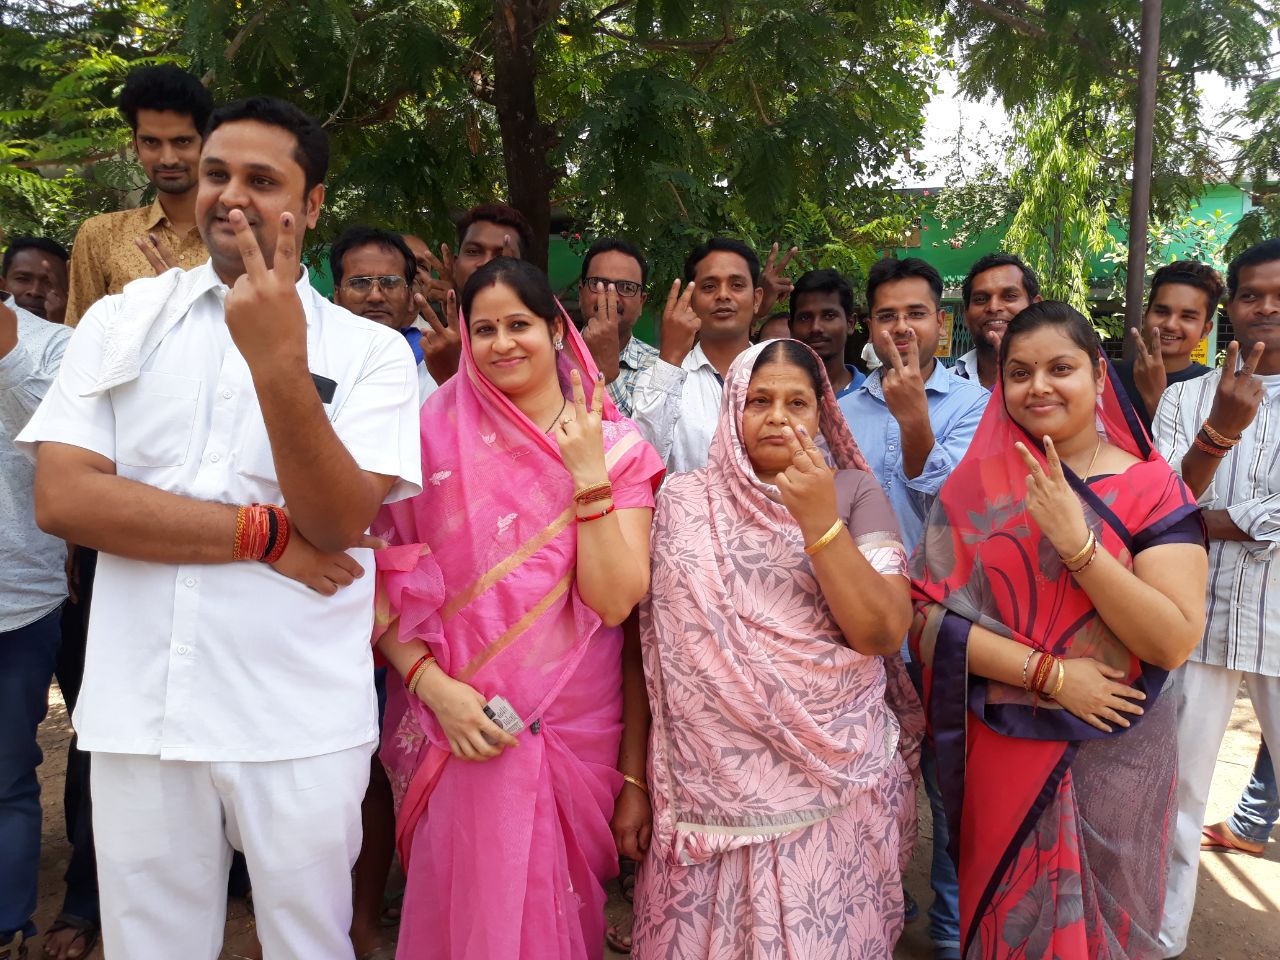 उच्च शिक्षा मंत्री उमेश पटेल ने मां और भाभी के साथ किया मतदान, कहा- जीतेंगे रायगढ़ सीट